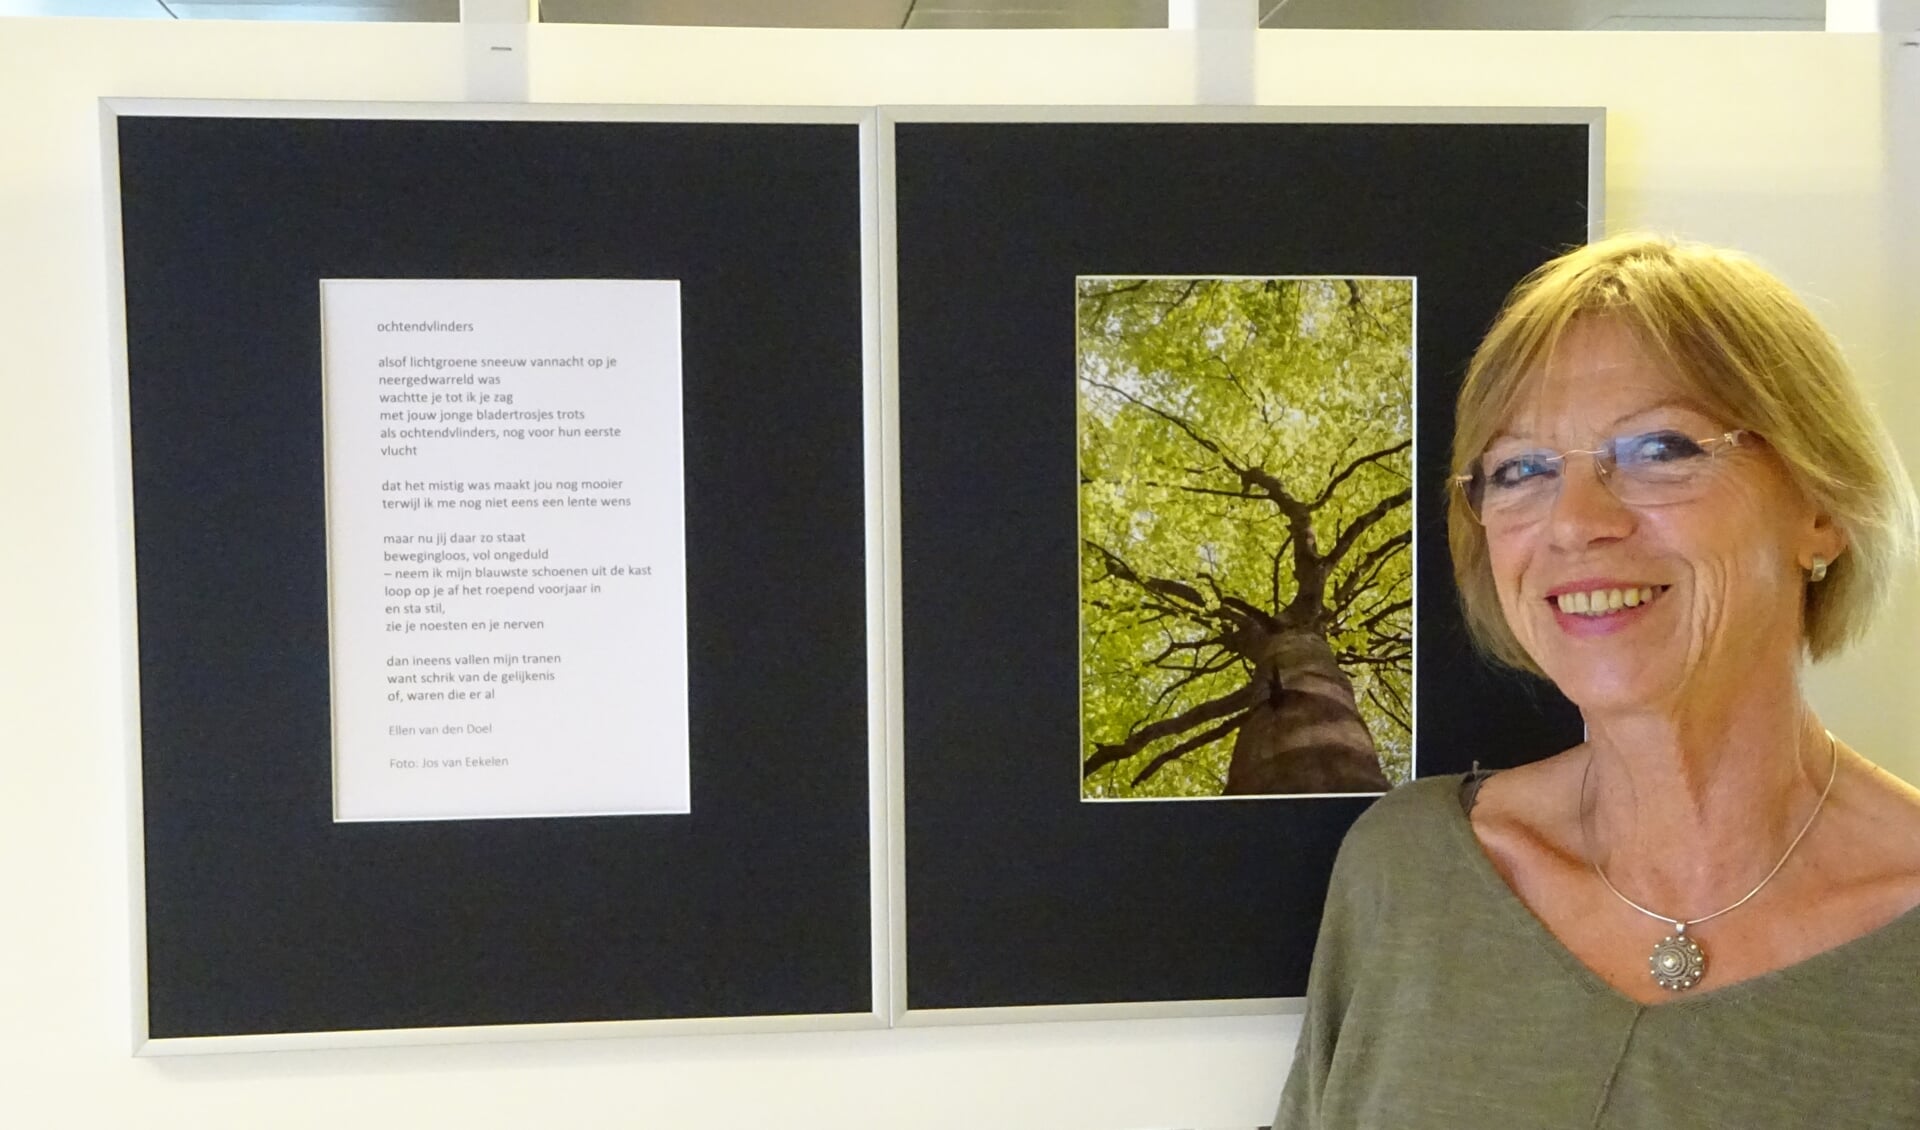 Dichteres Ellen van den Doel is een van de deelnemers van Fototaal. 